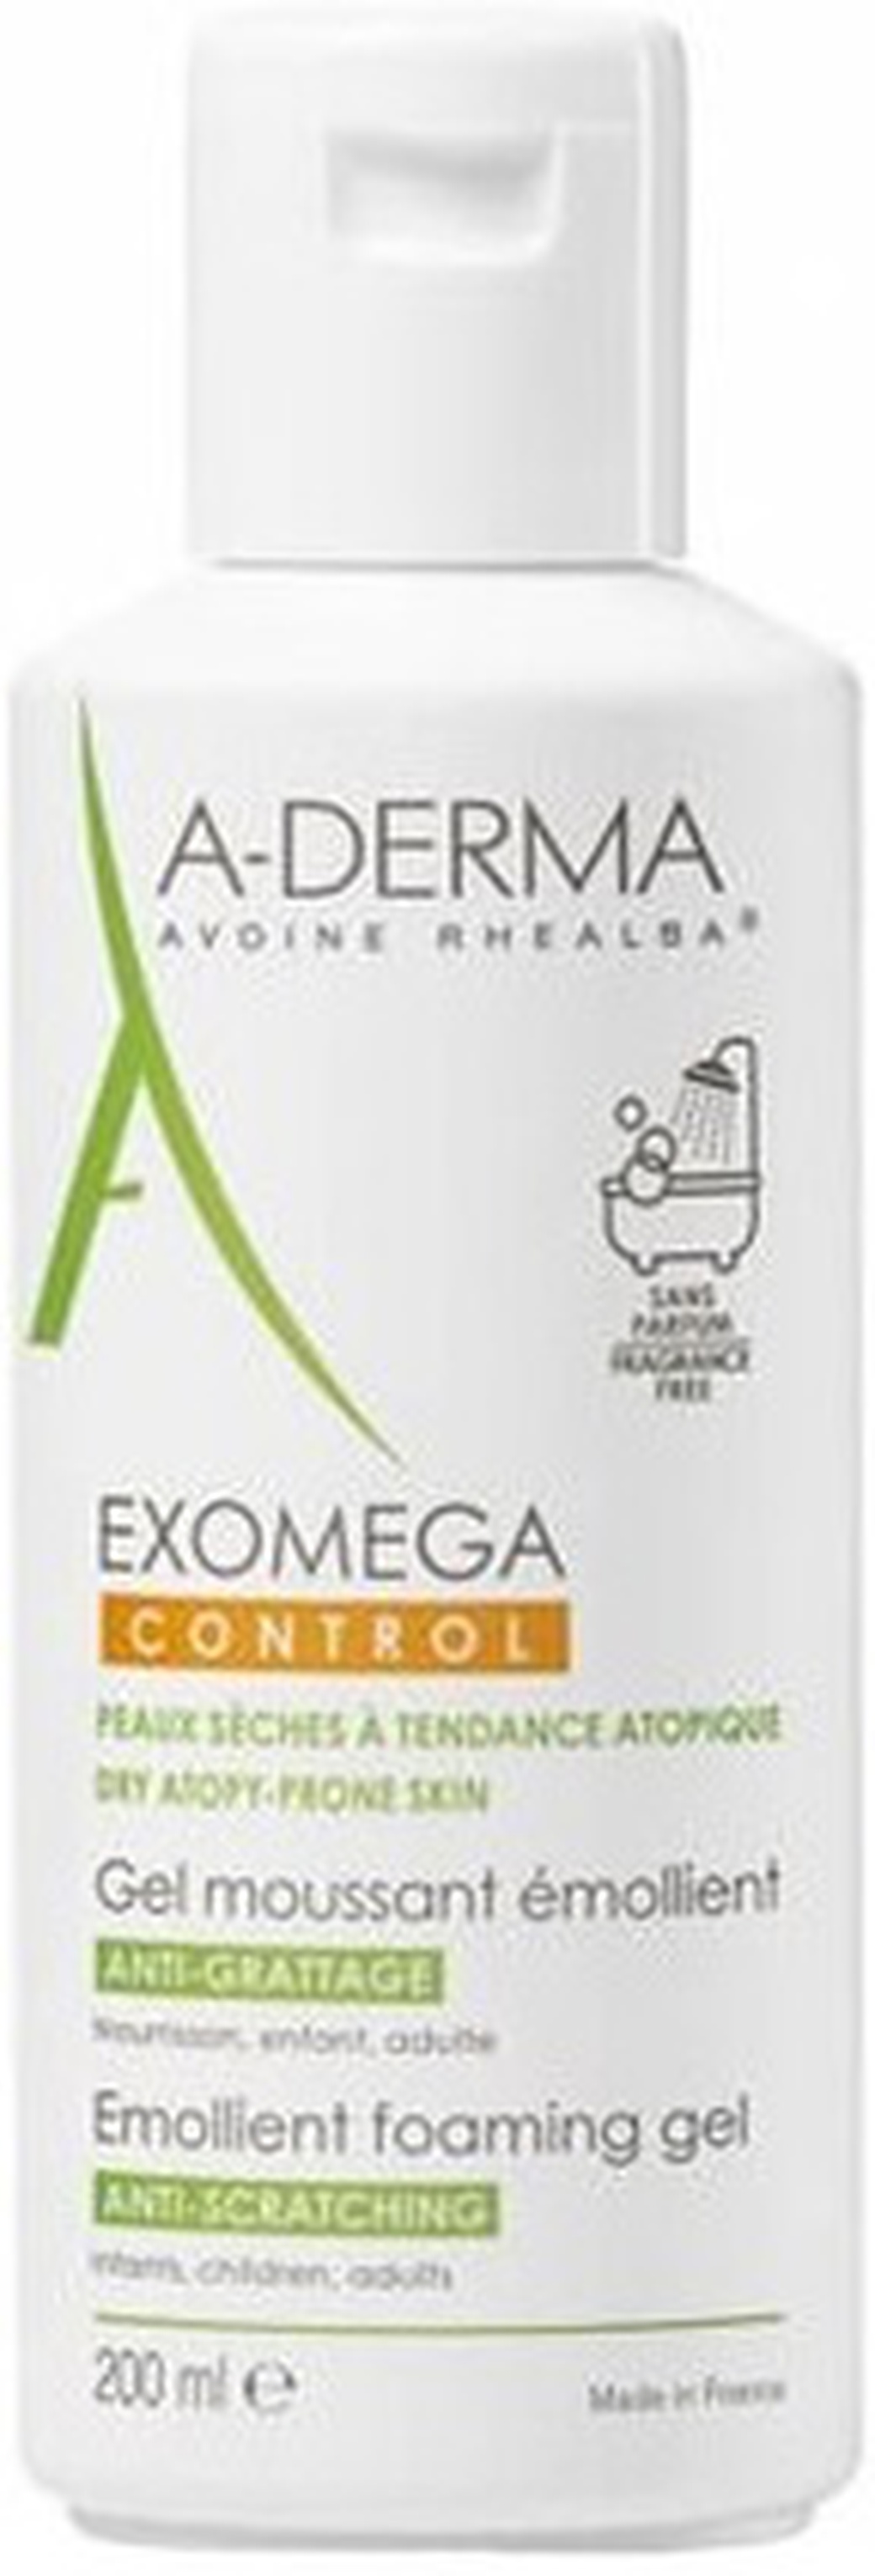 A-Derma Exomega control смягчающий пенящийся гель 200 мл фото